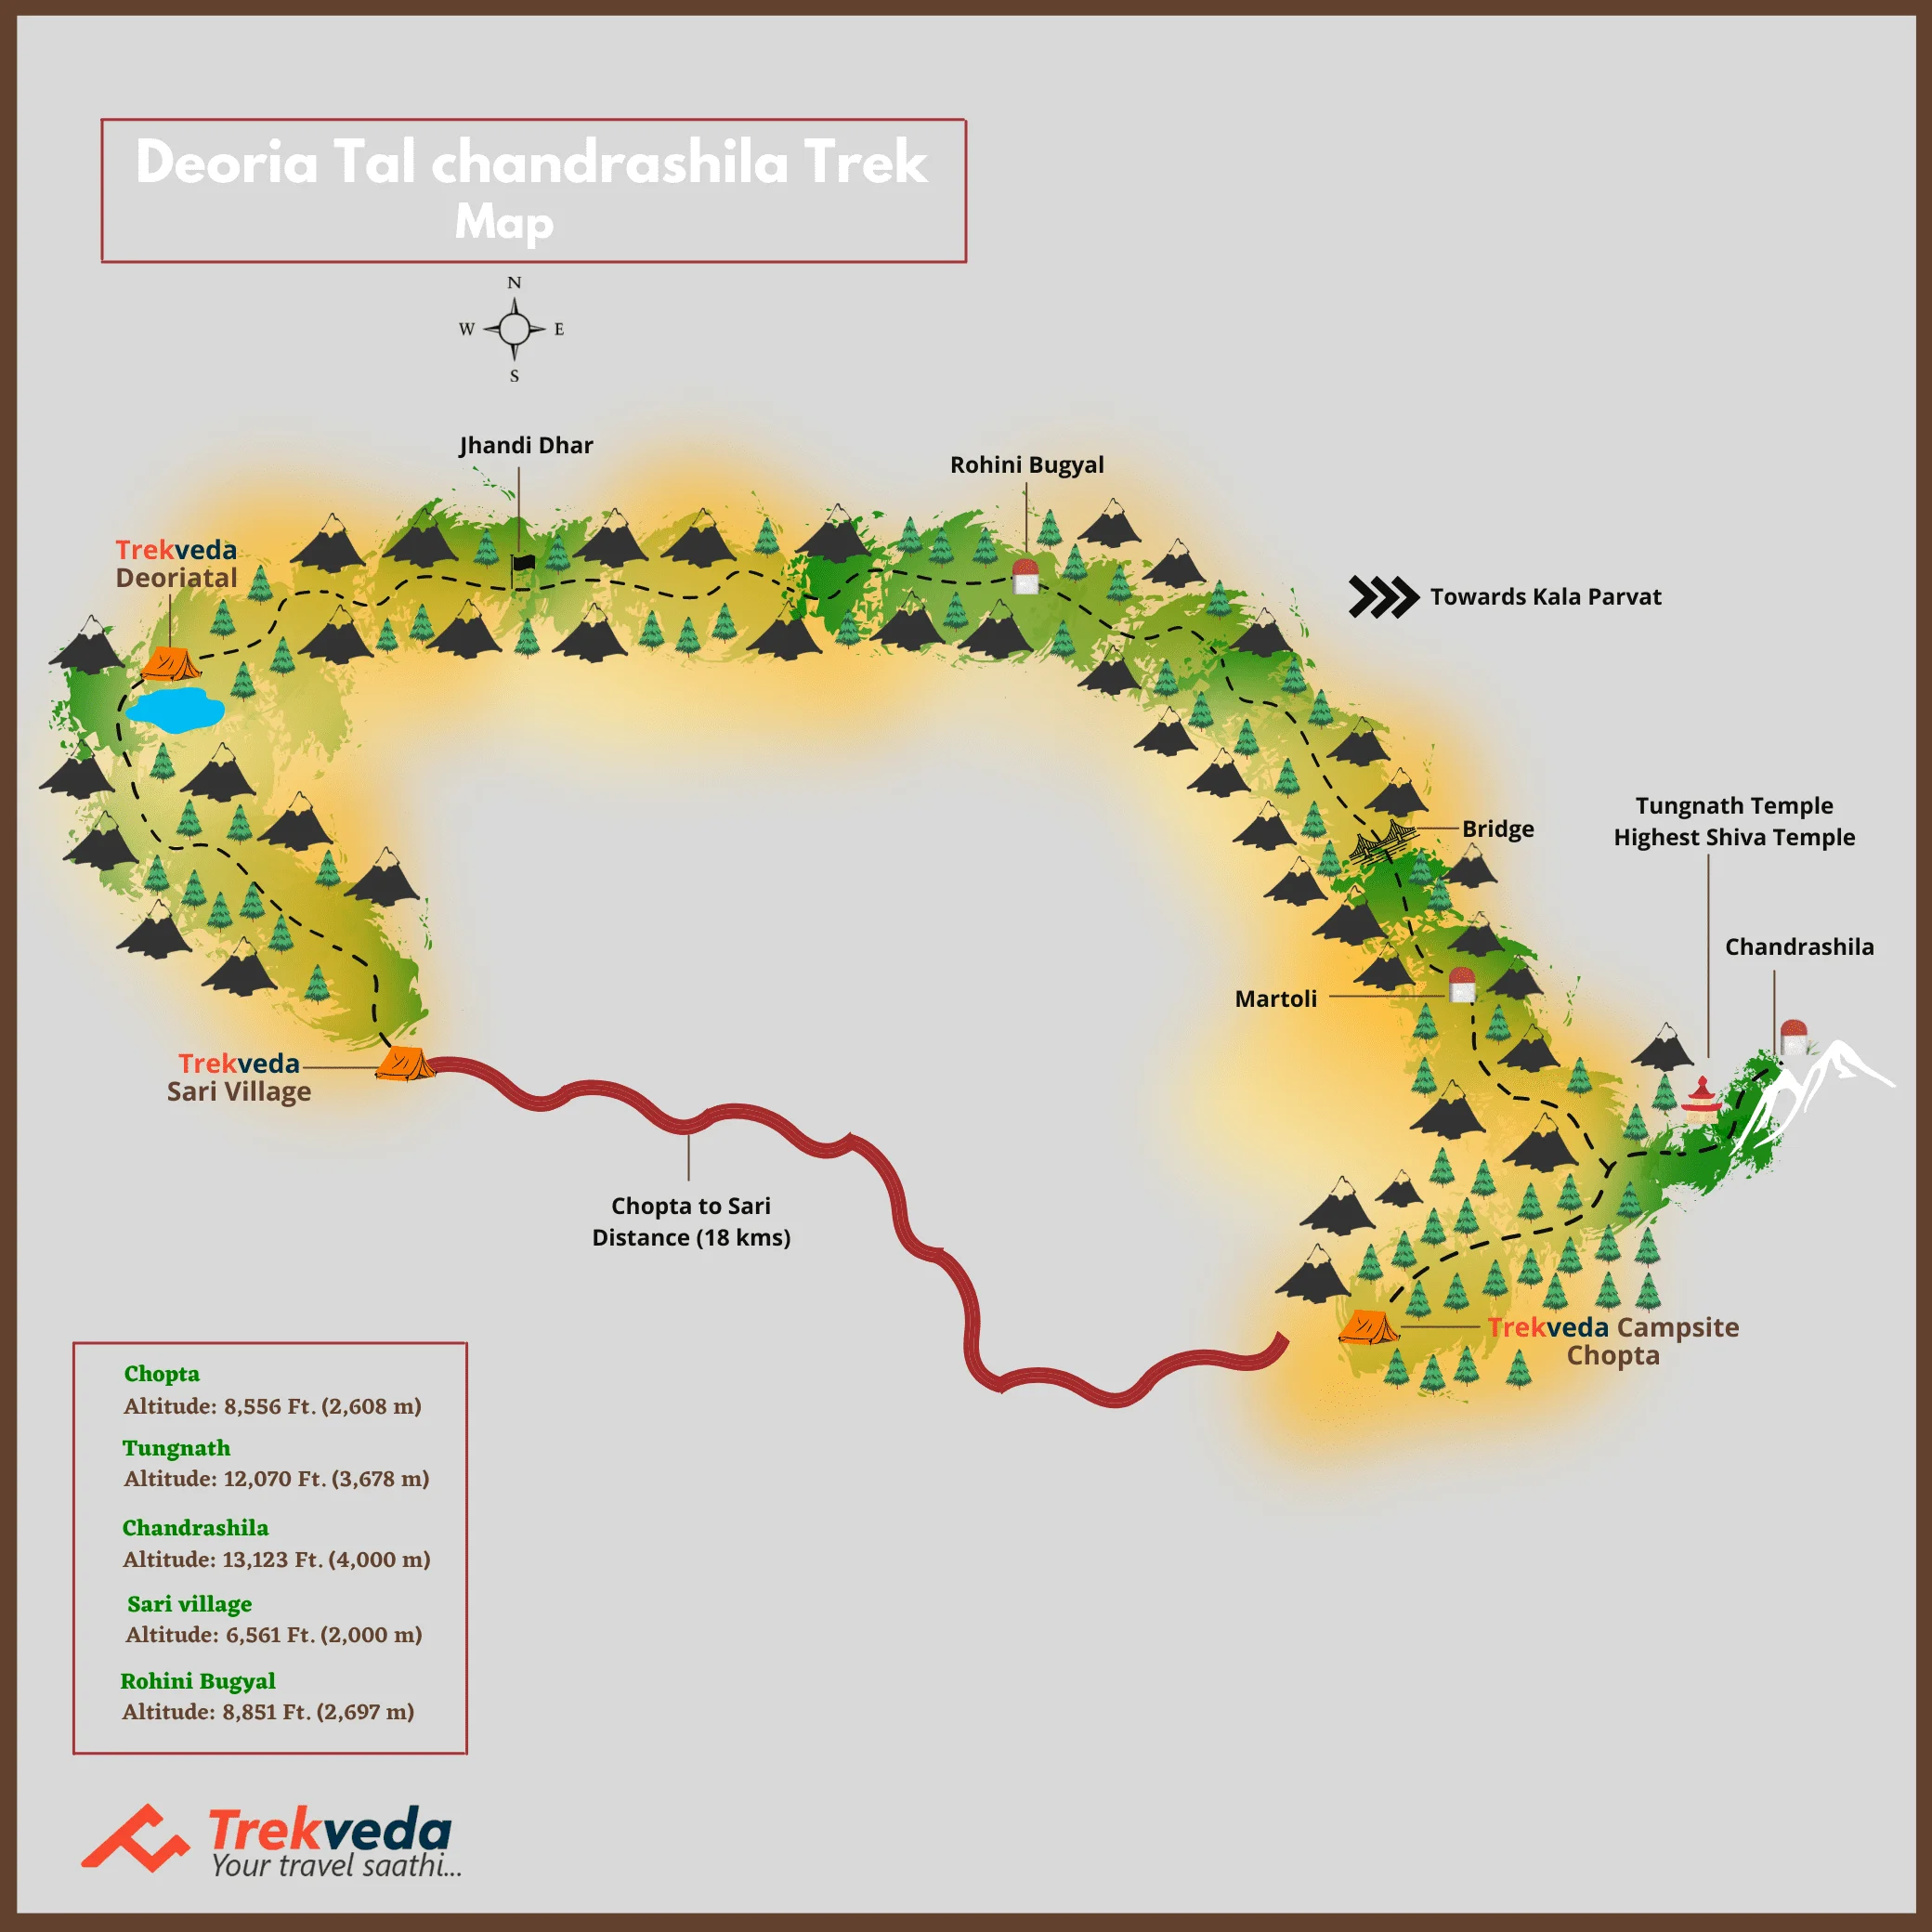 Deoria Tal chandrashila Trek Map